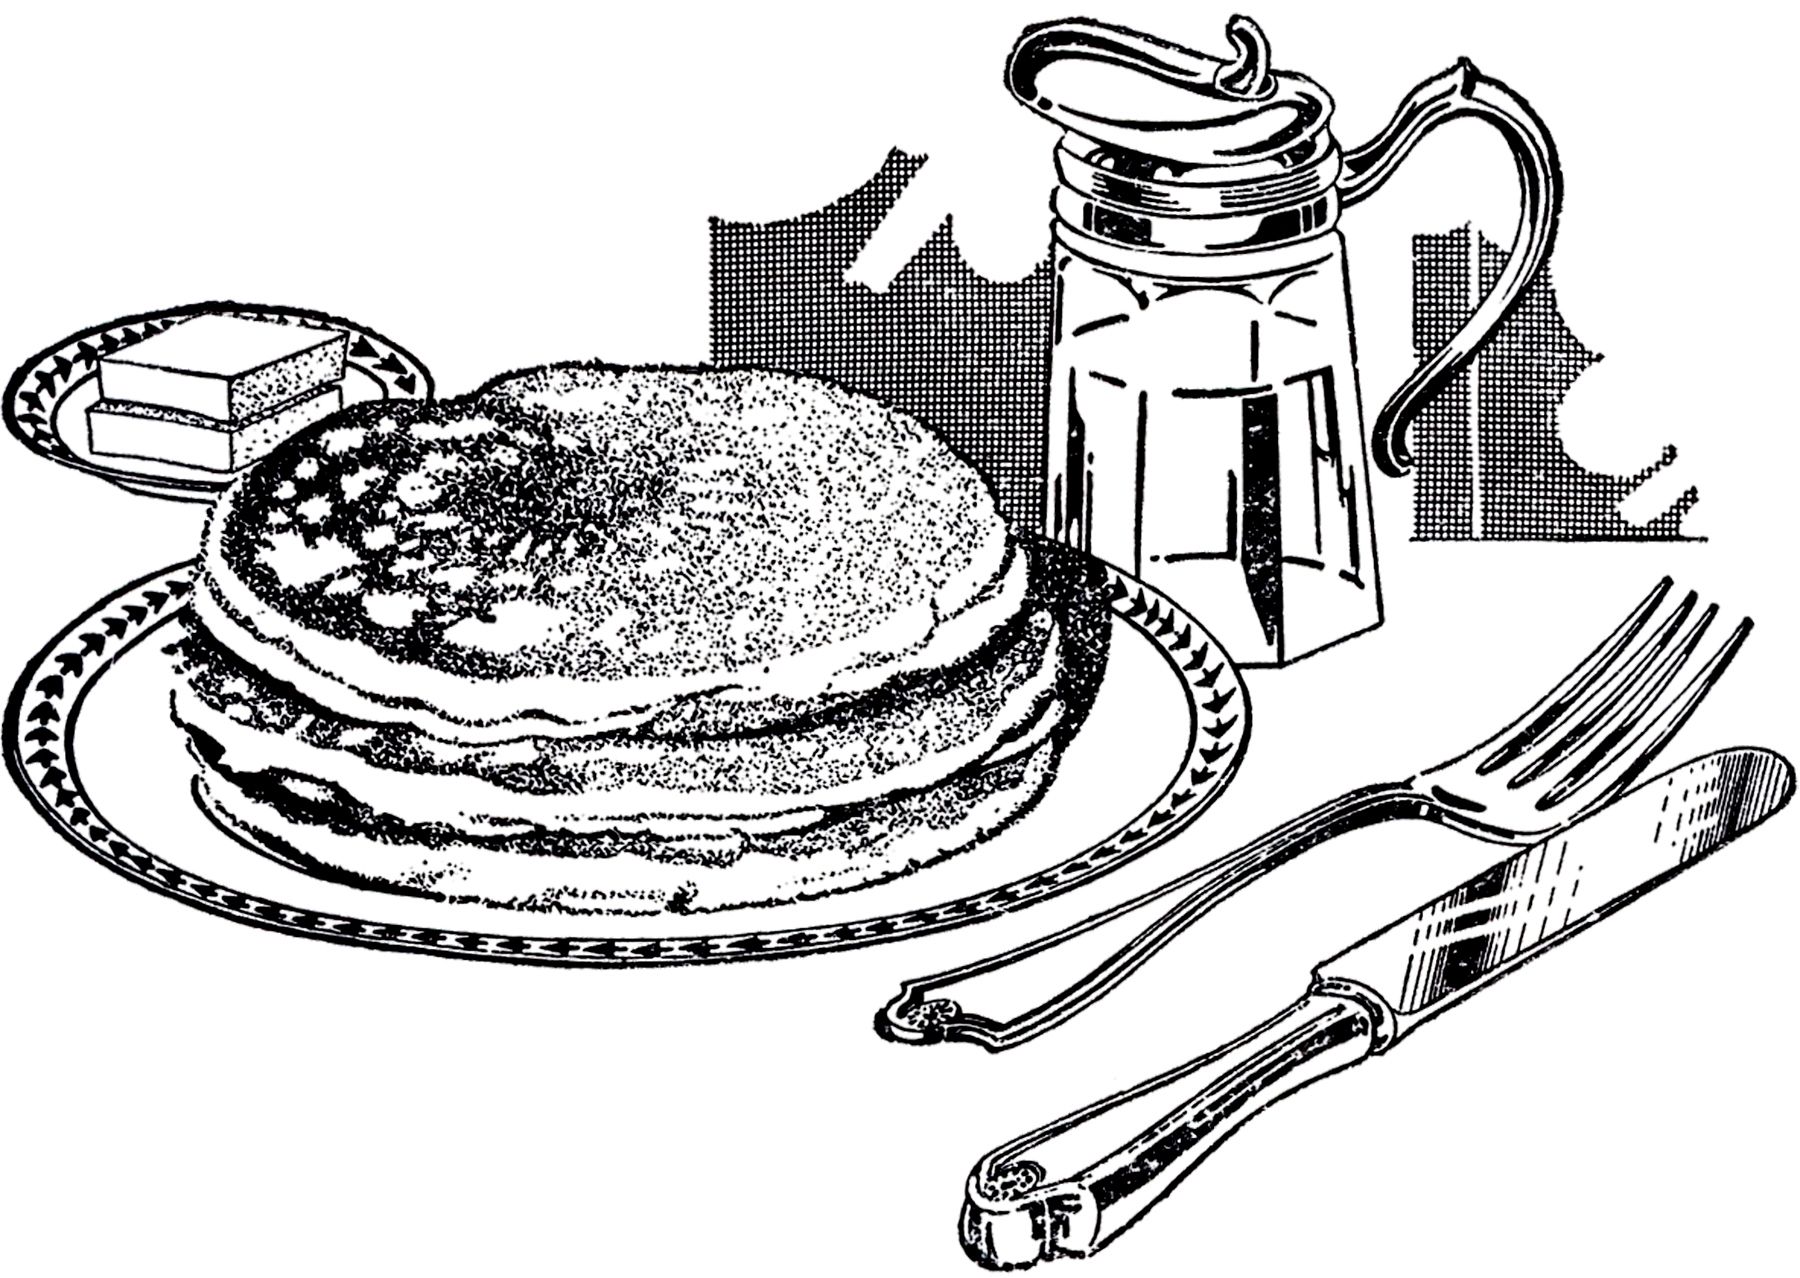 pancakes clipart vintage